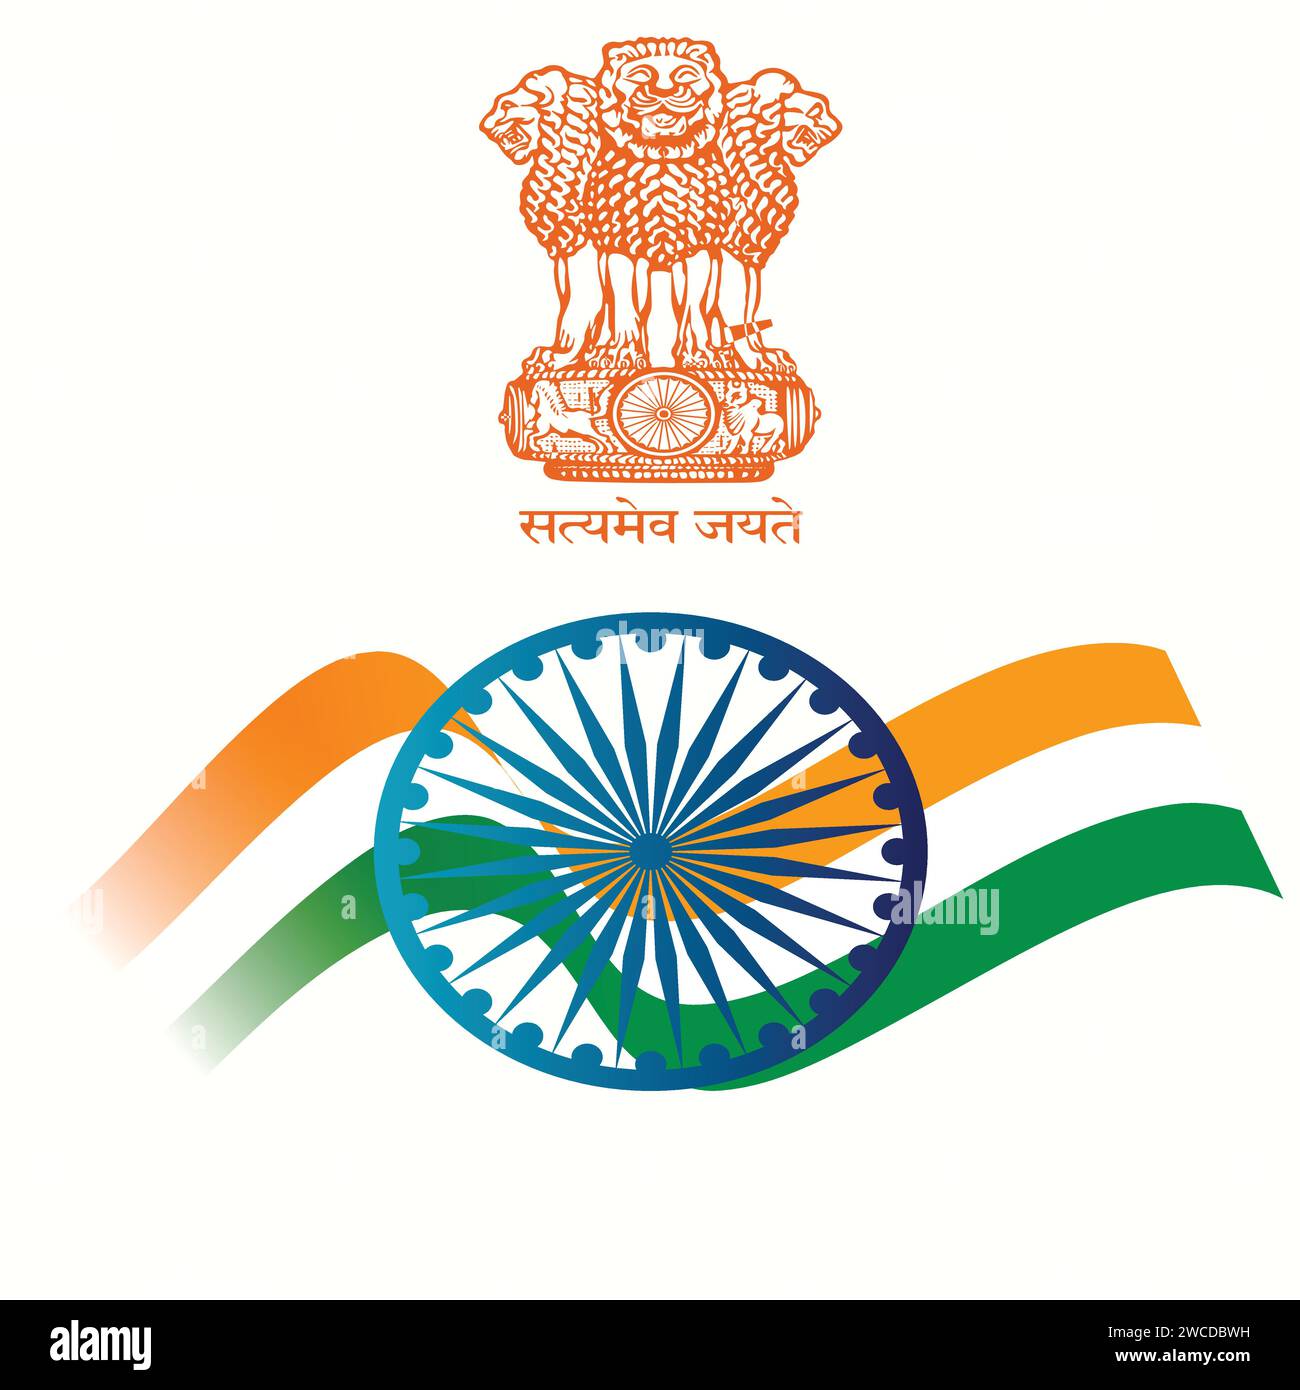 Vektor-Illustration von Tricolor Flagge und Ashoka Emblem von Indien Stock Vektor